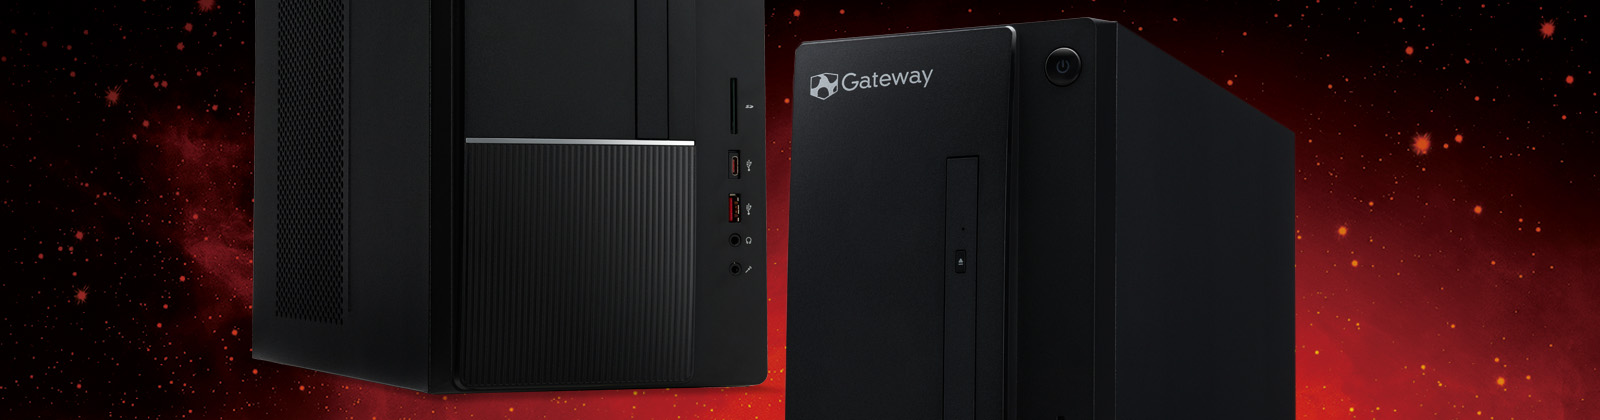 DX6785-F76J/GN | Gateway | acer